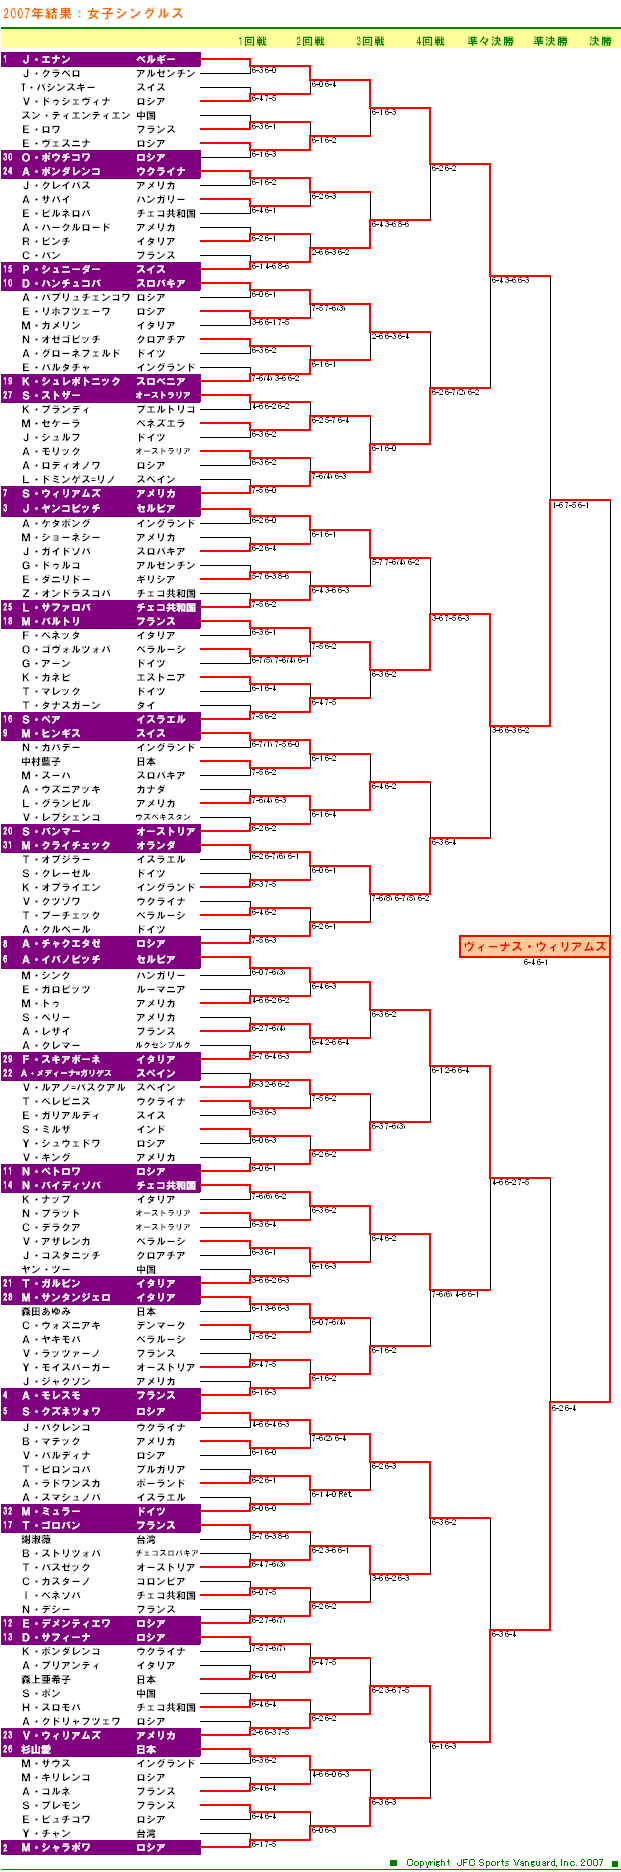 ウィンブルドンテニス2007　女子シングルスドロー表